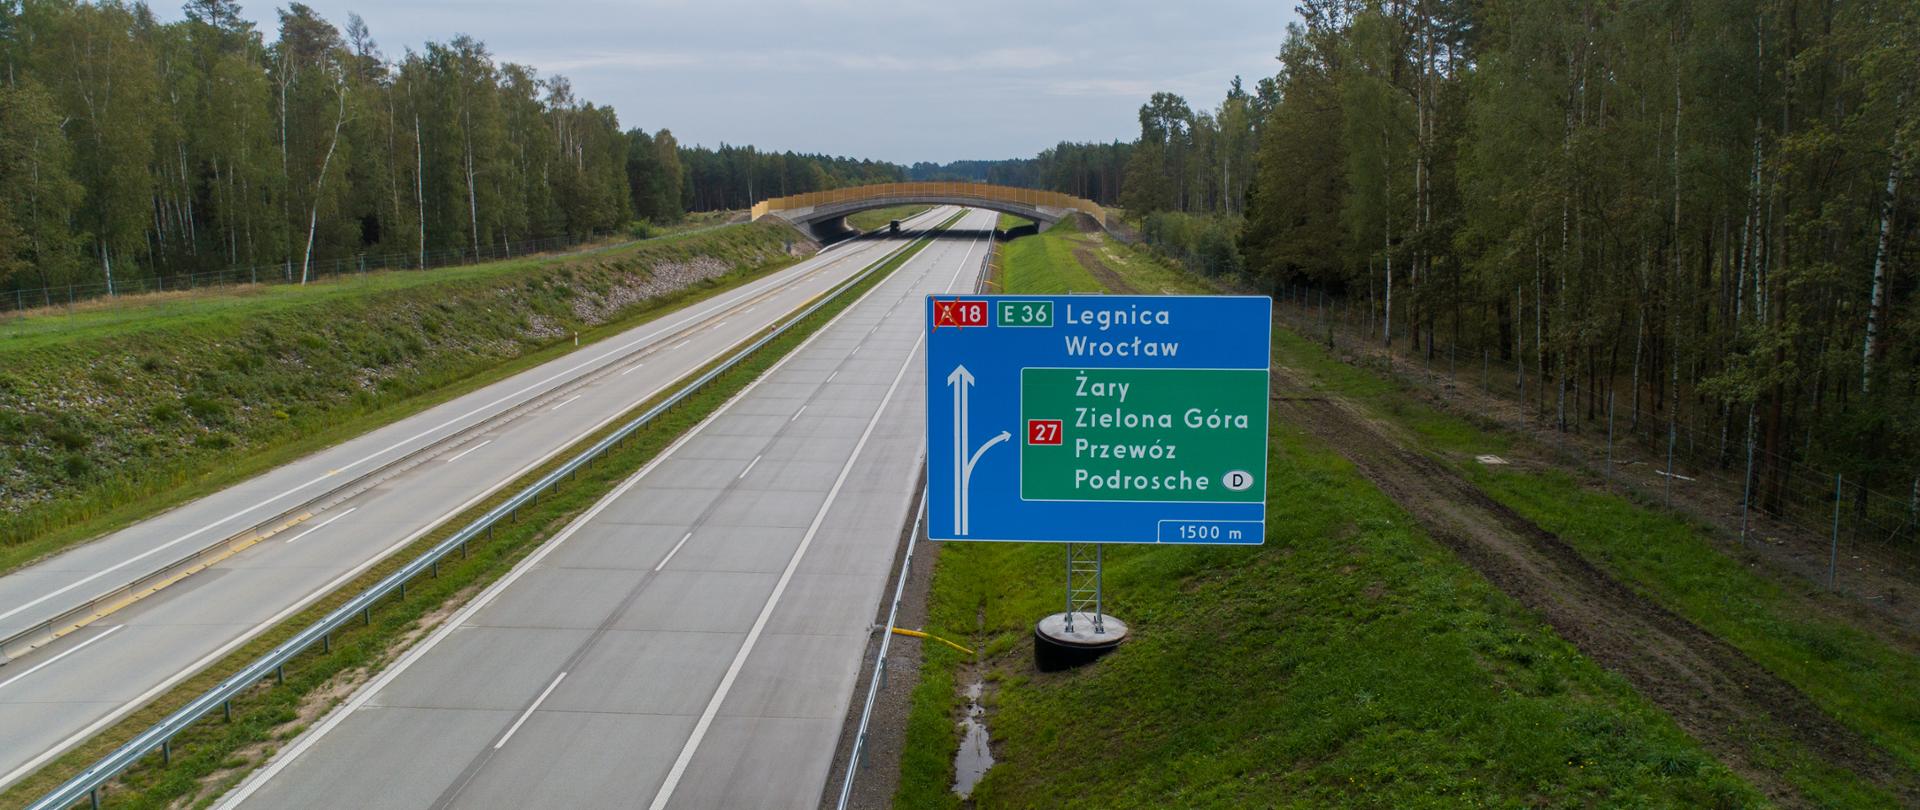 Autostrada A18 z widoczną na pierwszym planie tablicą kierunkową (Legnica, Wrocław), na dalszym planie widoczne duże przejście dla zwierząt.